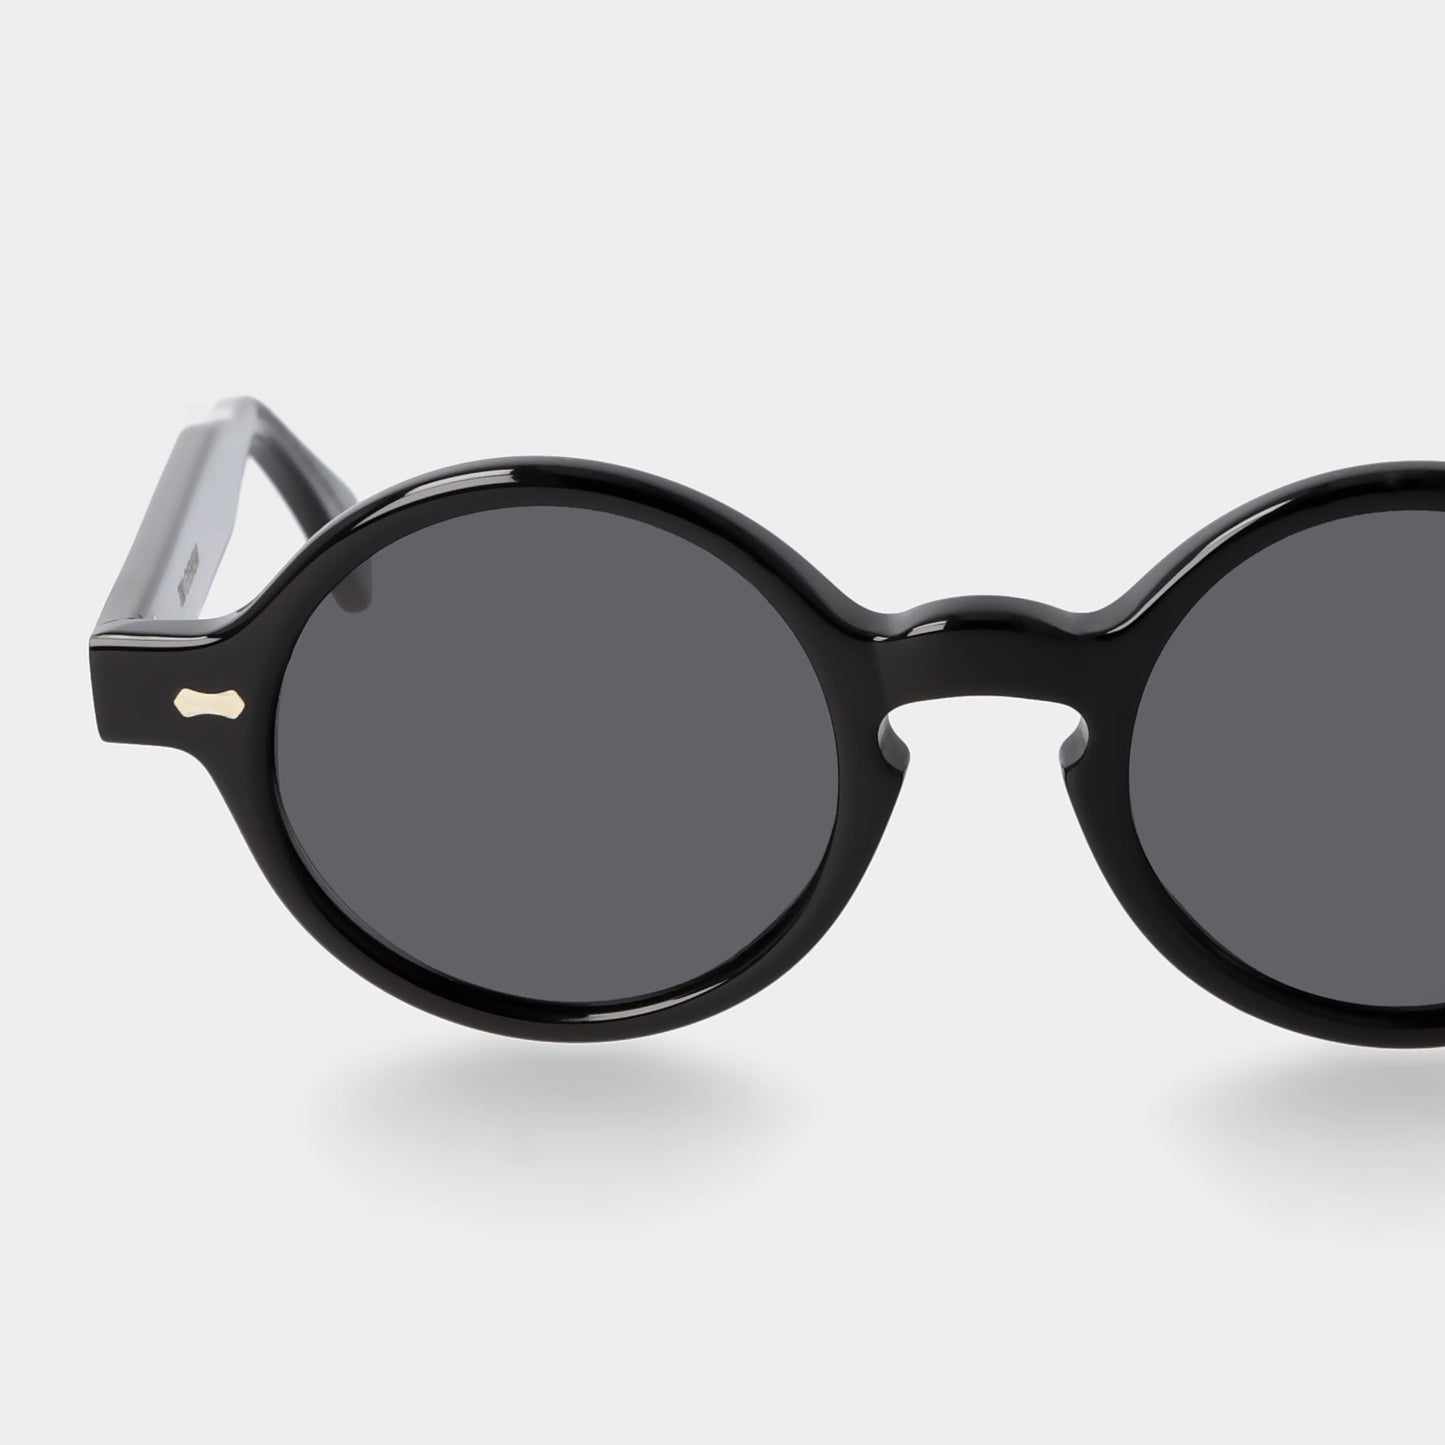 TBD Eyewear Oxford Eco Black / Grey